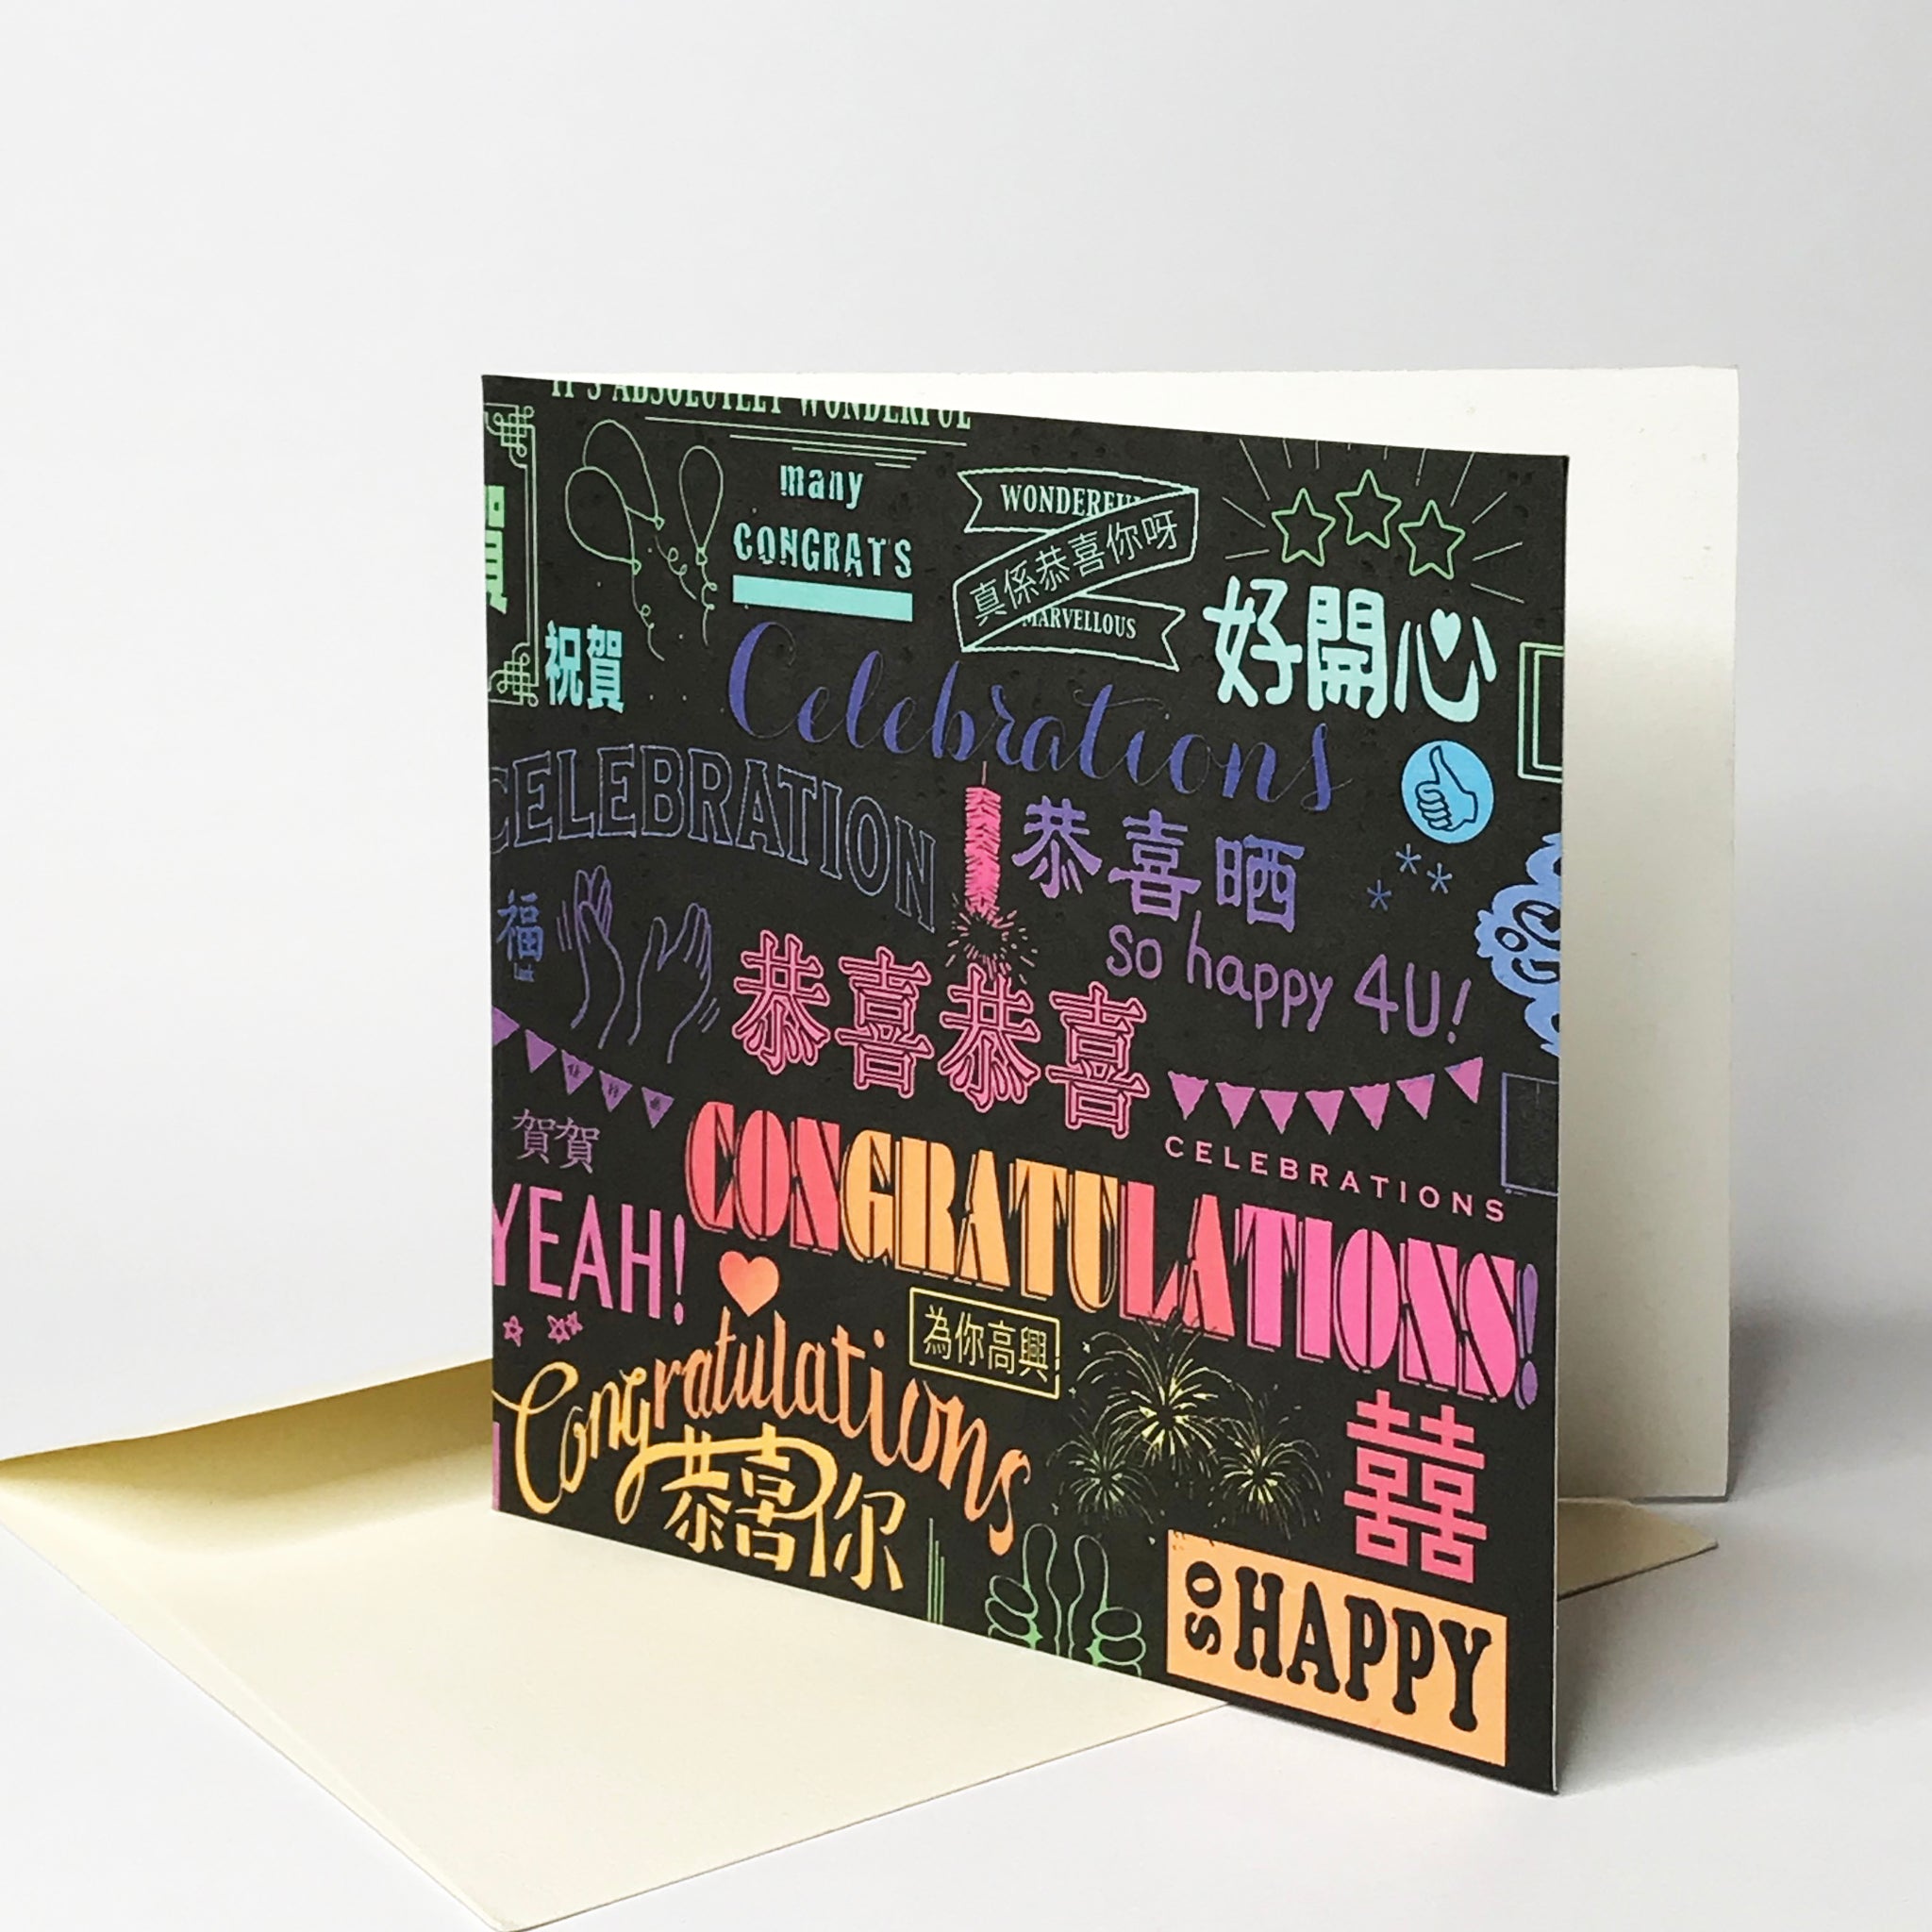 'Many Congratulations' Card